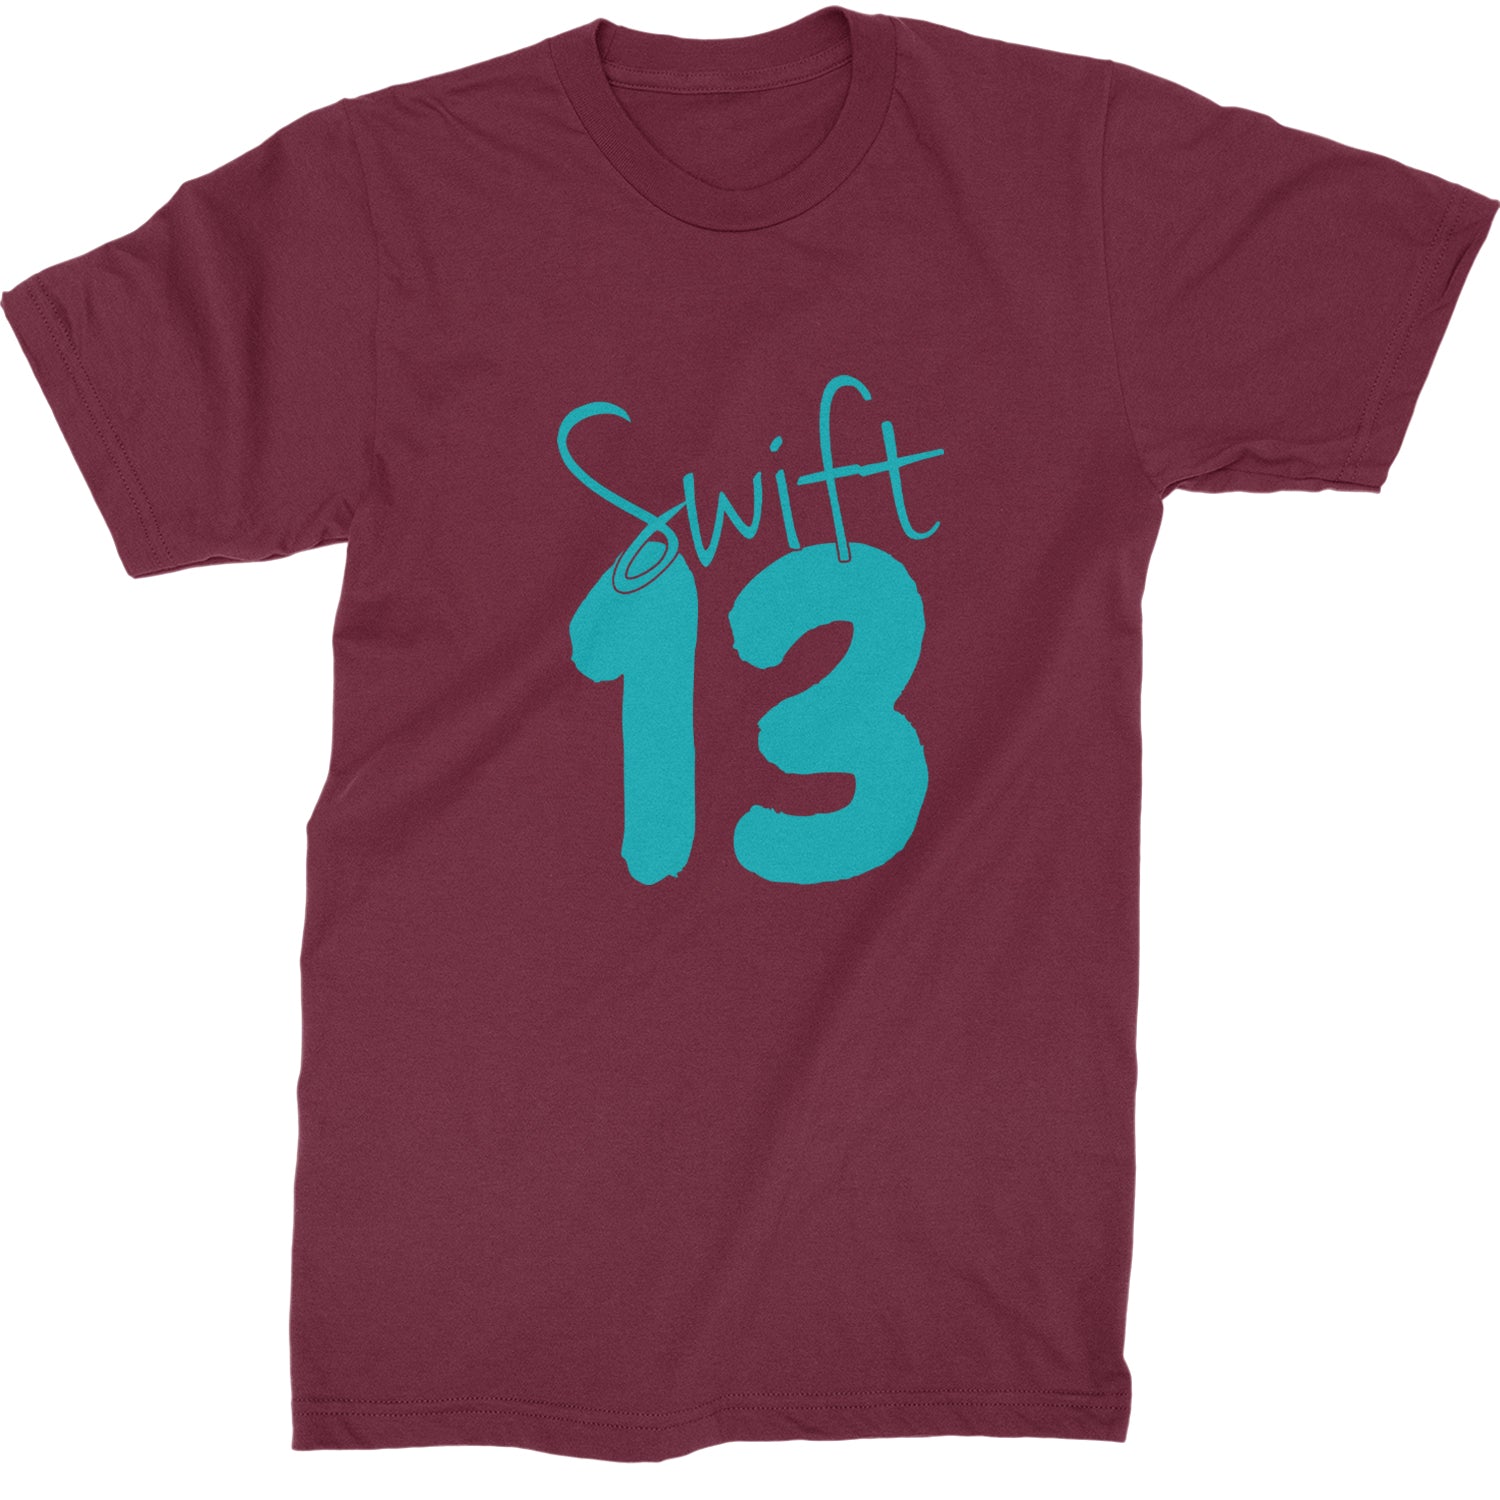 13 Swift 13 Lucky Number Era TTPD Mens T-shirt Maroon